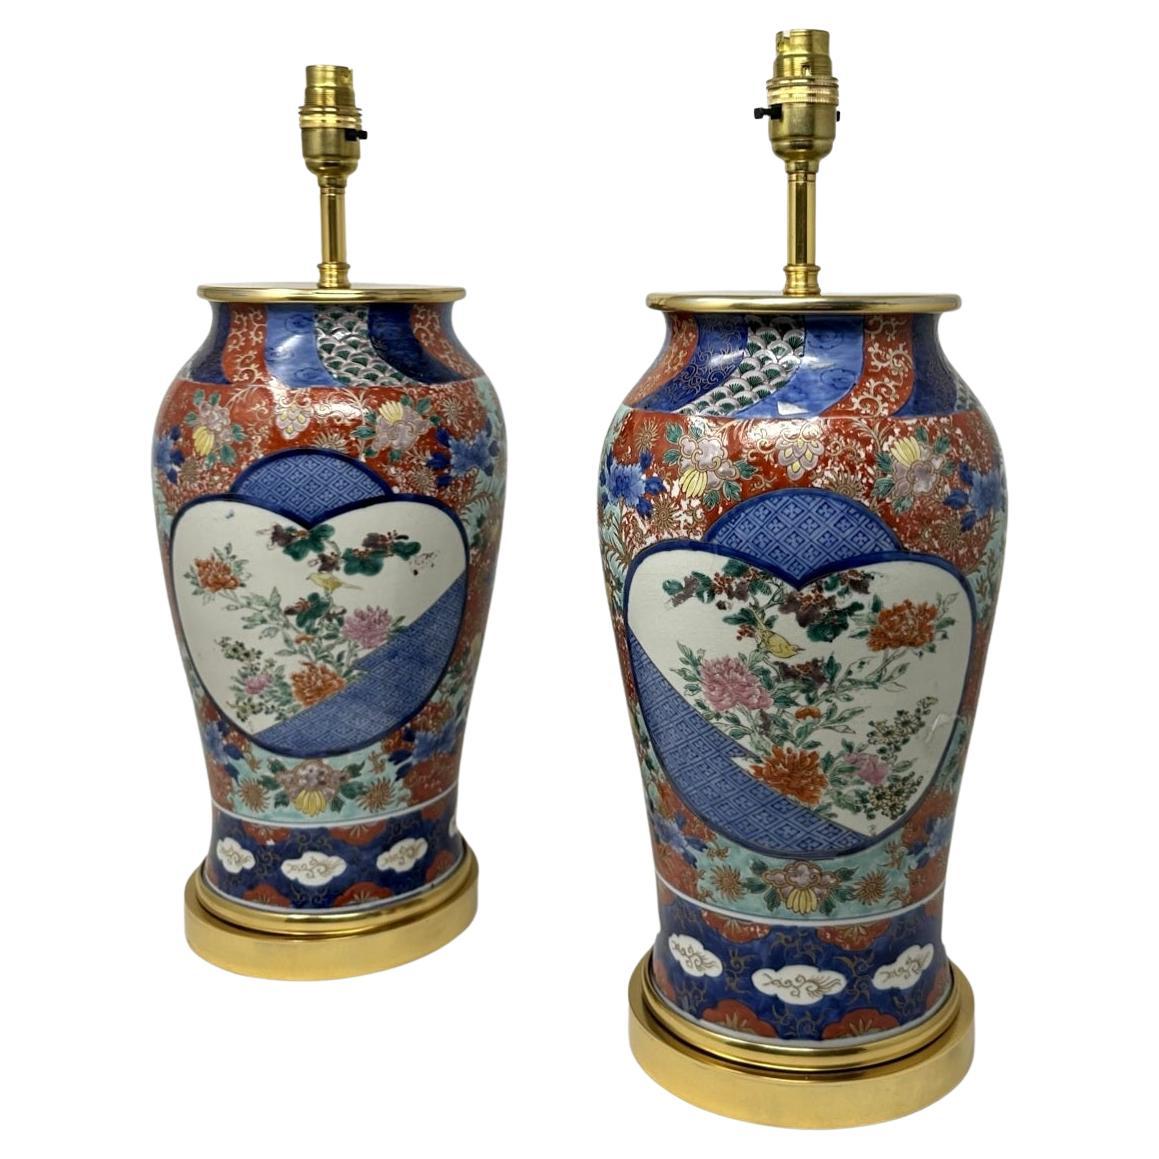 Paire de lampes de bureau japonaises anciennes en porcelaine Imari dorée et bleue, rouge et dorée